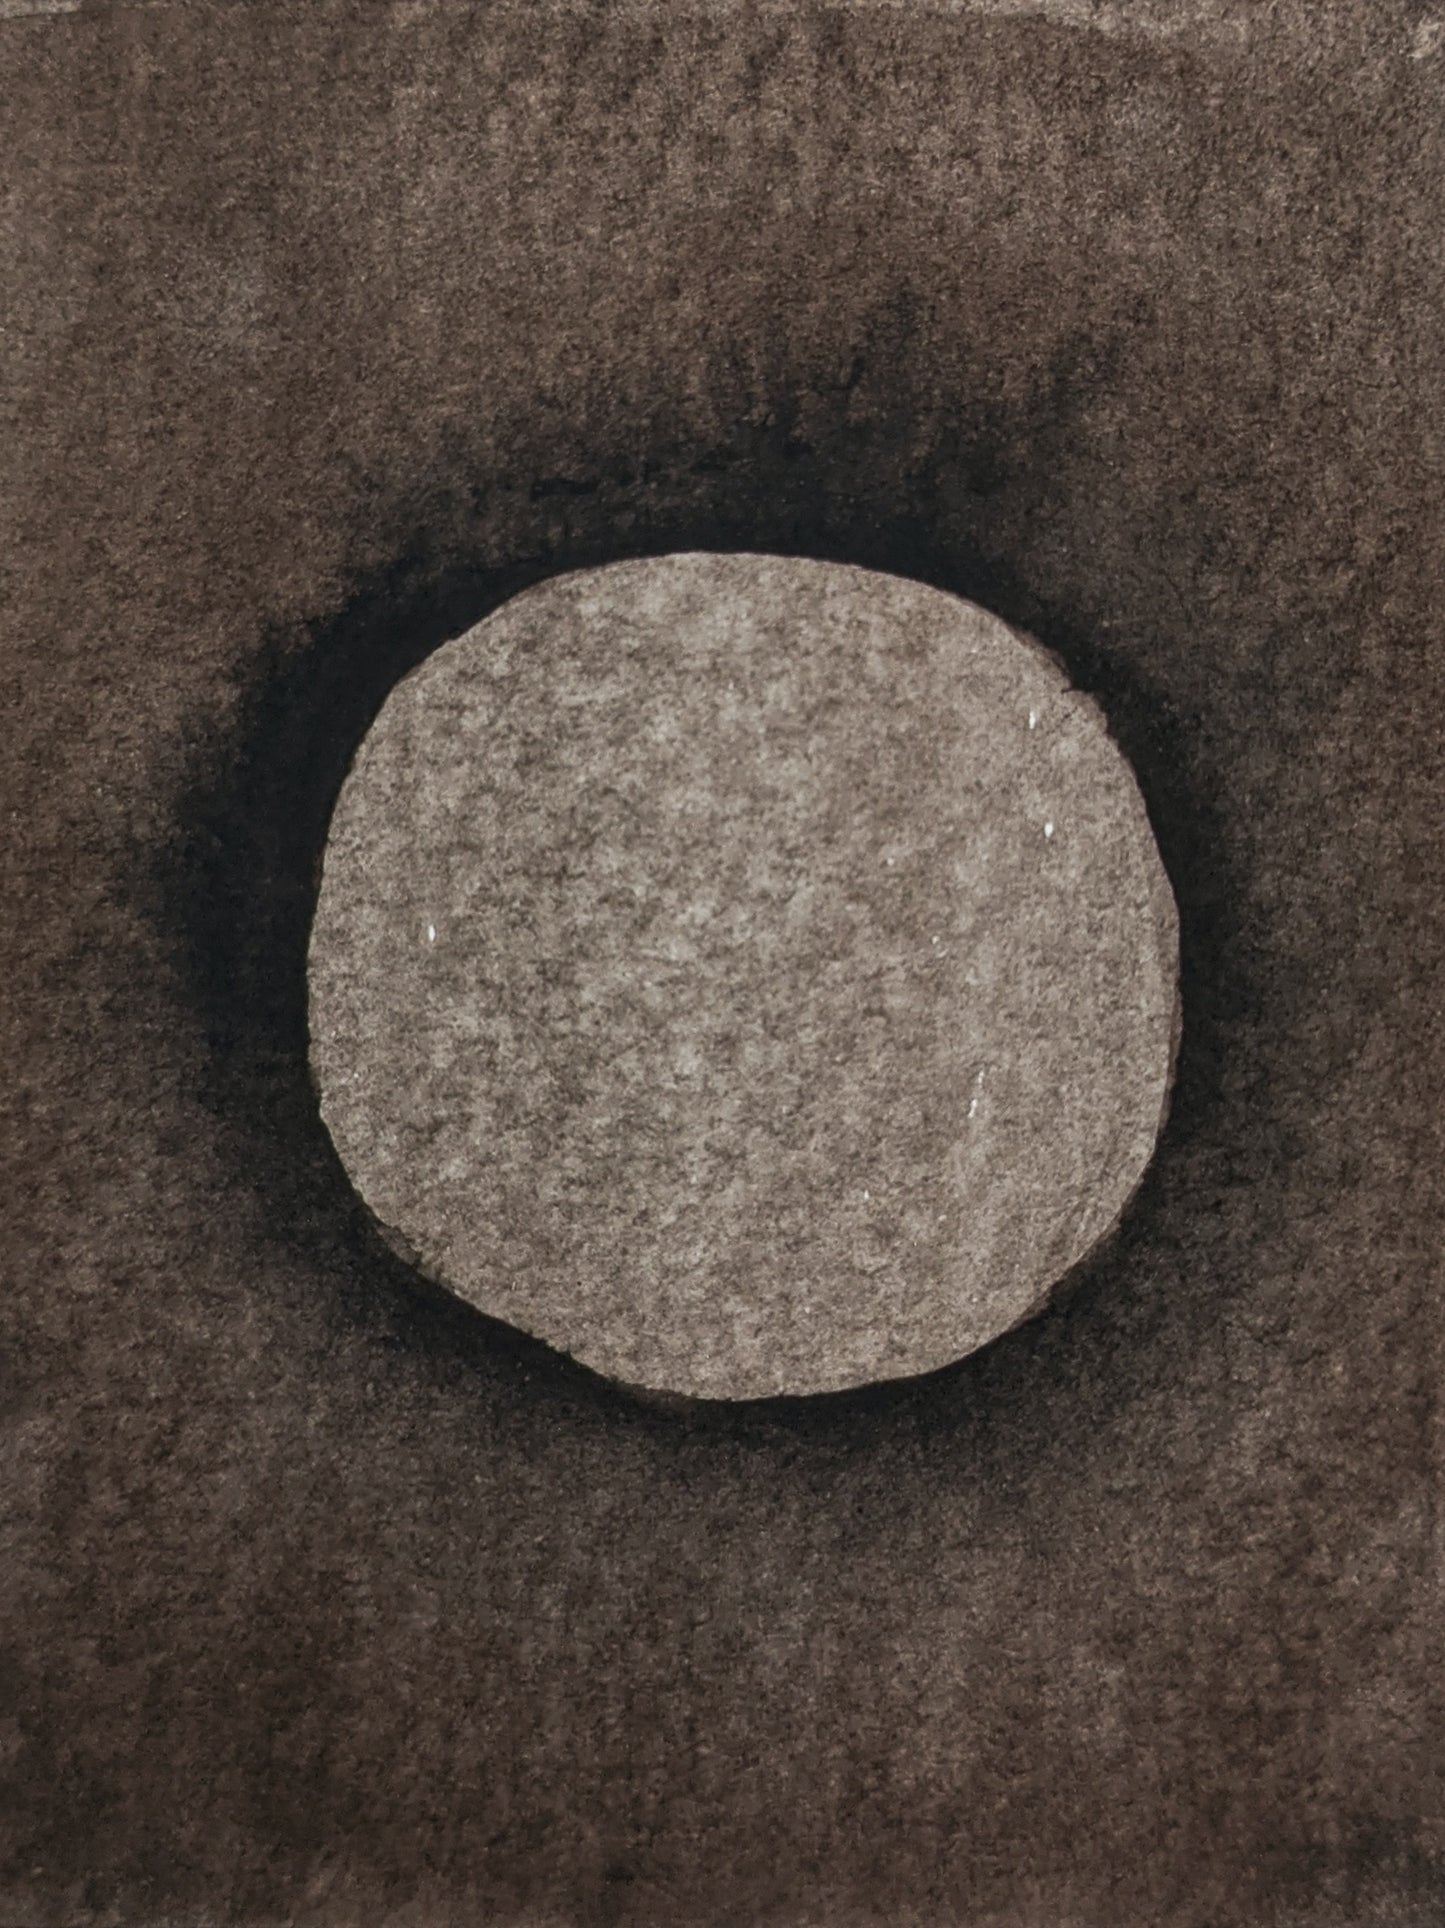 untitled circle painting no. 31